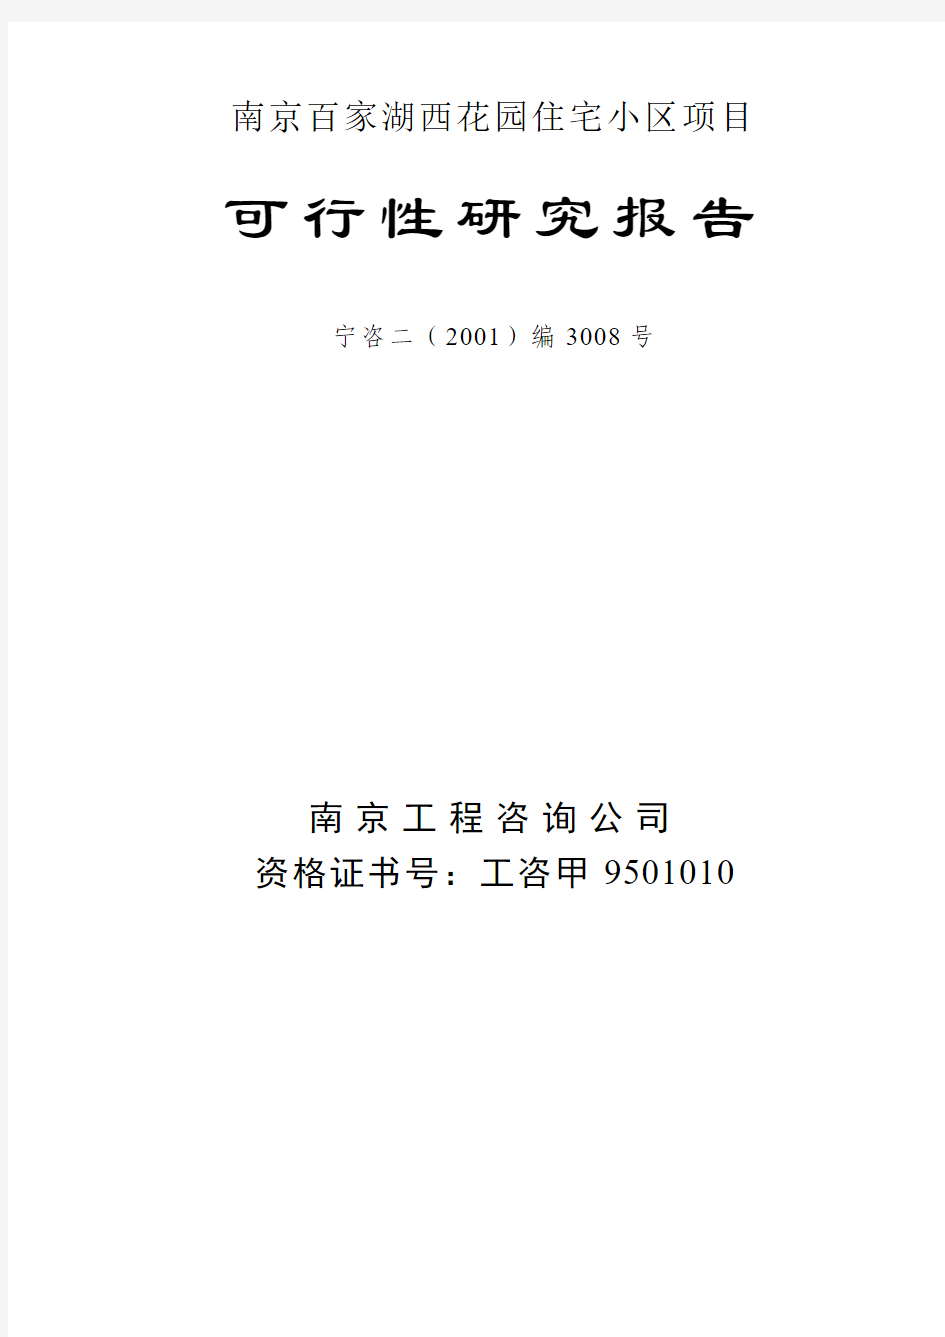 南京百家湖西花园住宅小区项目可行性研究报告 2 - 副本